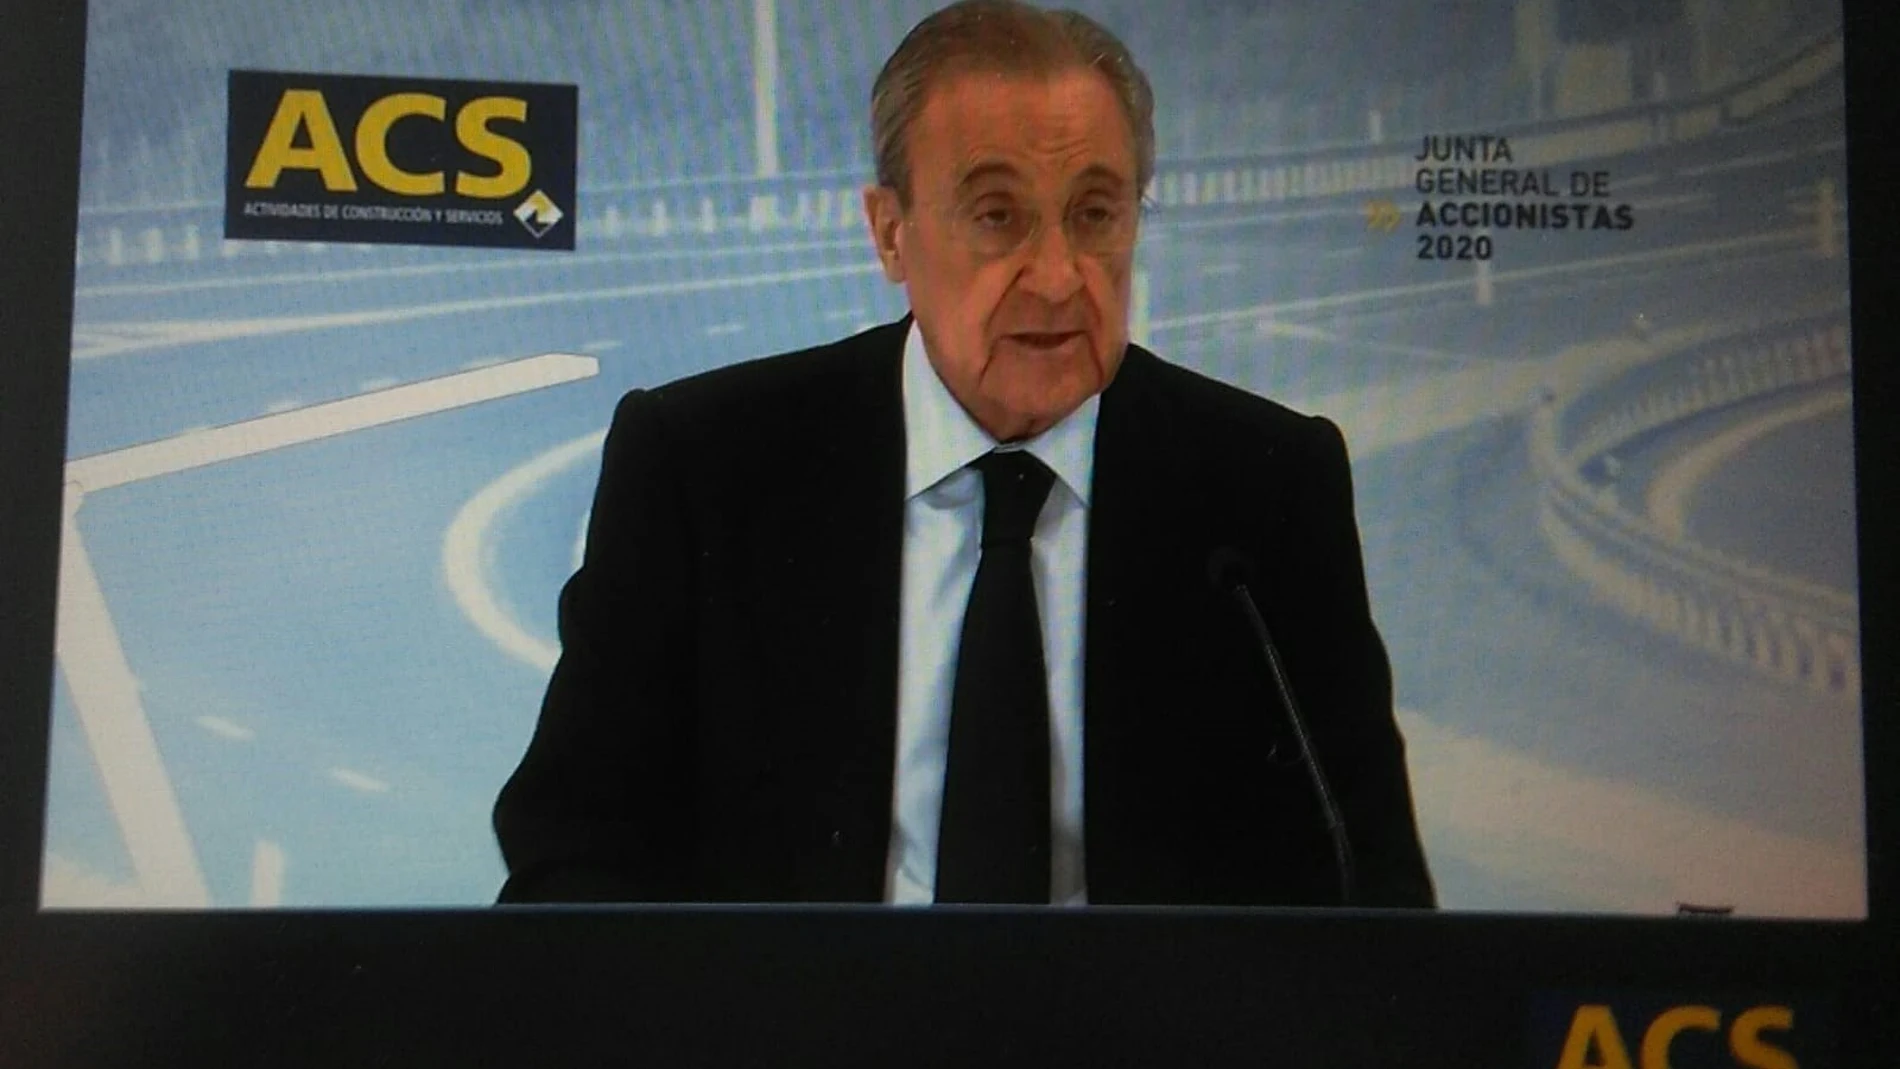 Economía/Macro.- Florentino Pérez pide que empresas, instituciones y sociedad trabajen juntos para superar la crisis